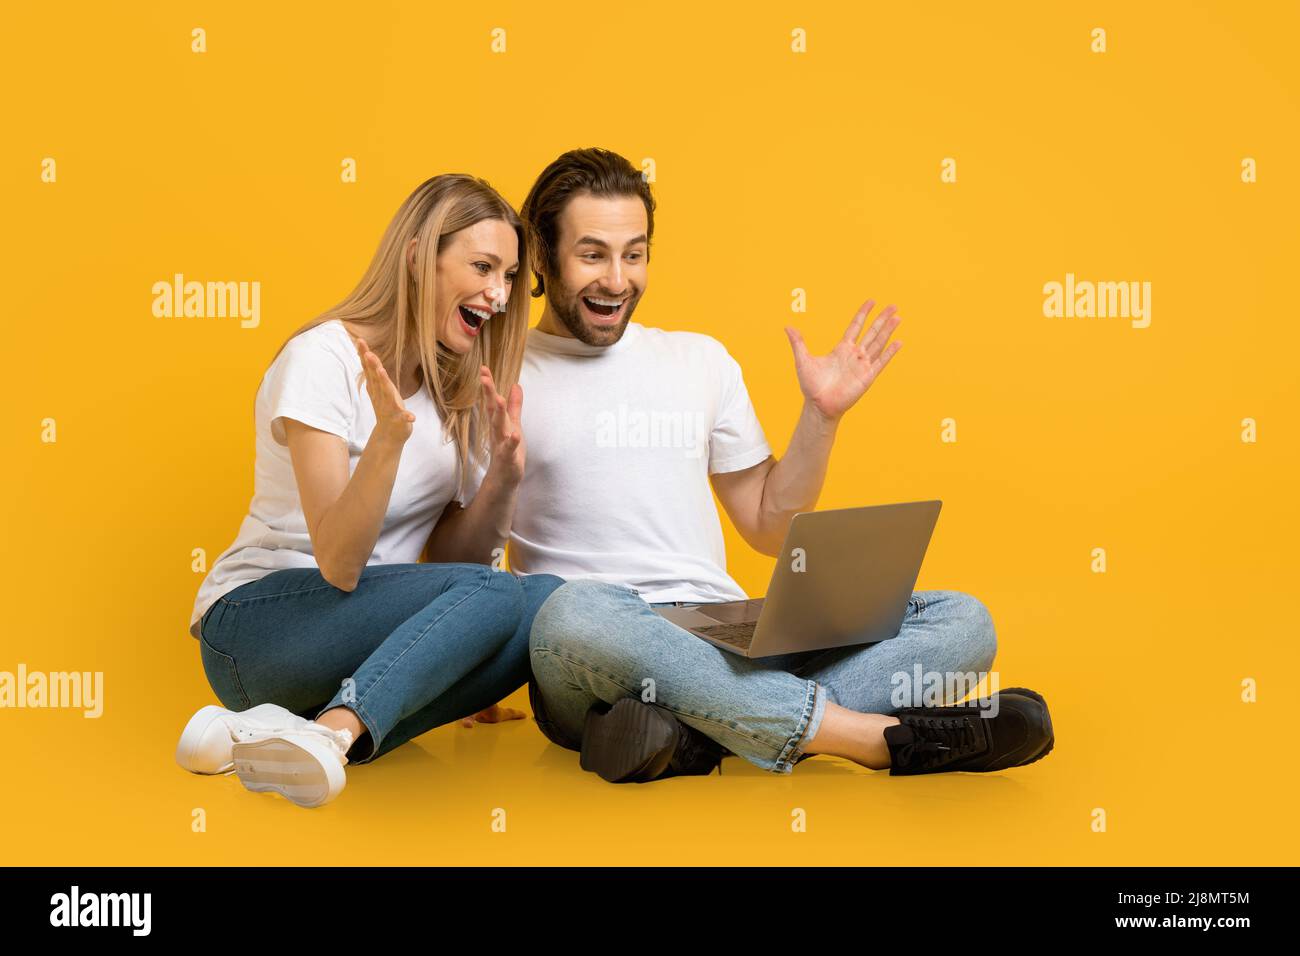 Fröhliche, überraschte junge europäische Familie sitzt auf dem Boden, schaut auf den Laptop, gestikuliert Stockfoto